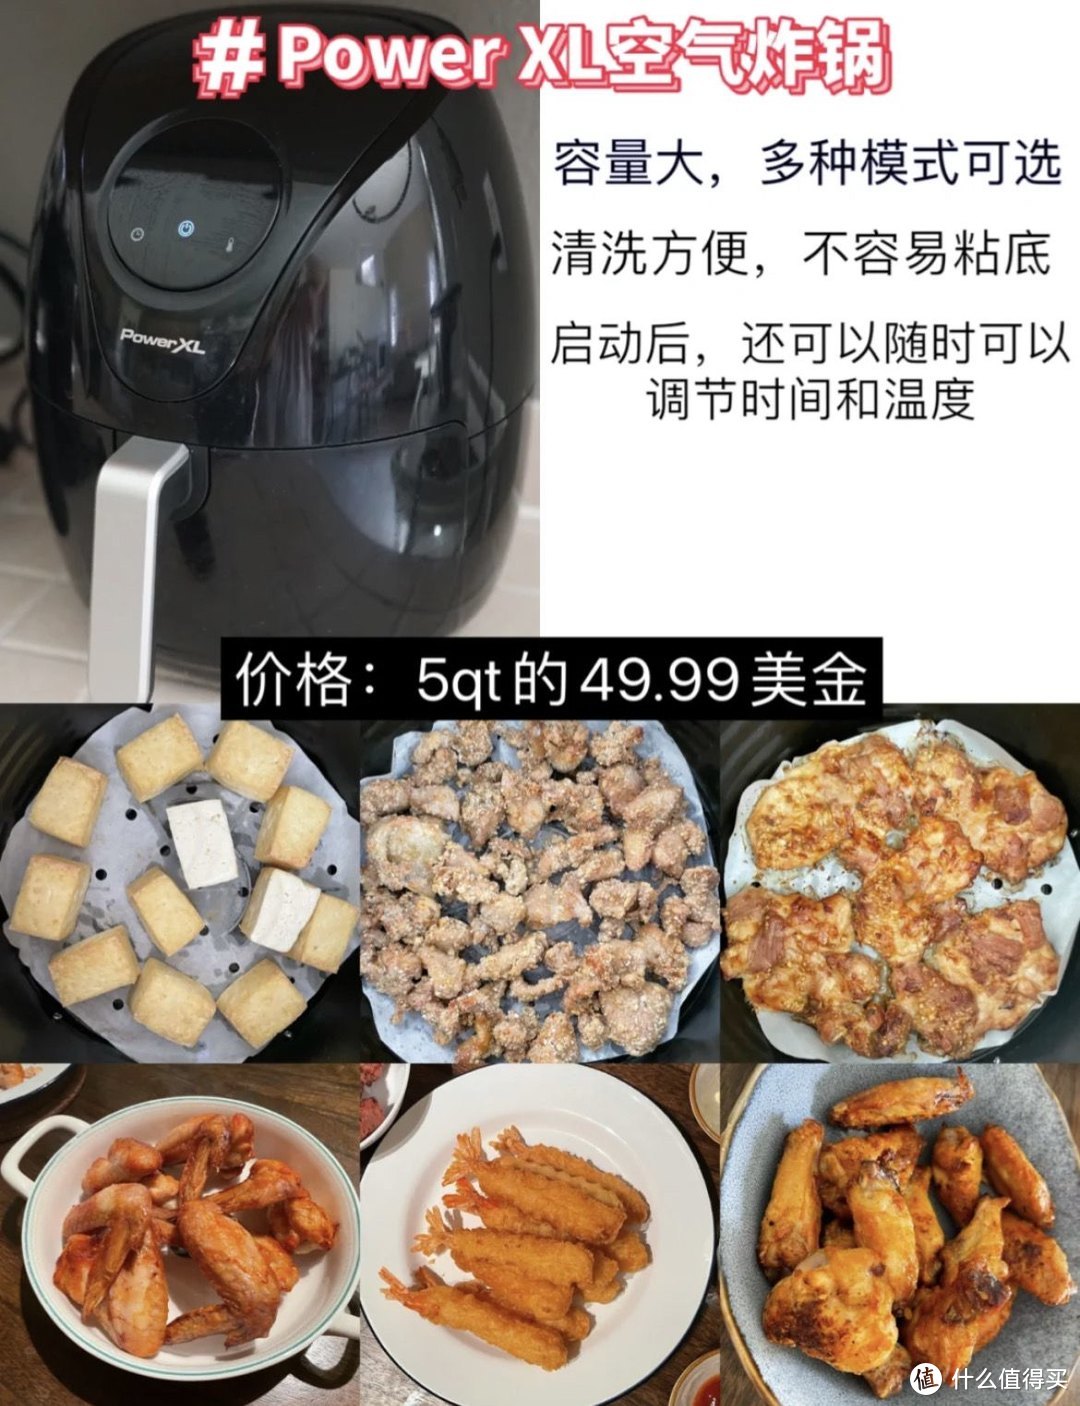 海外家庭怎么选购适合中国胃的小厨电?